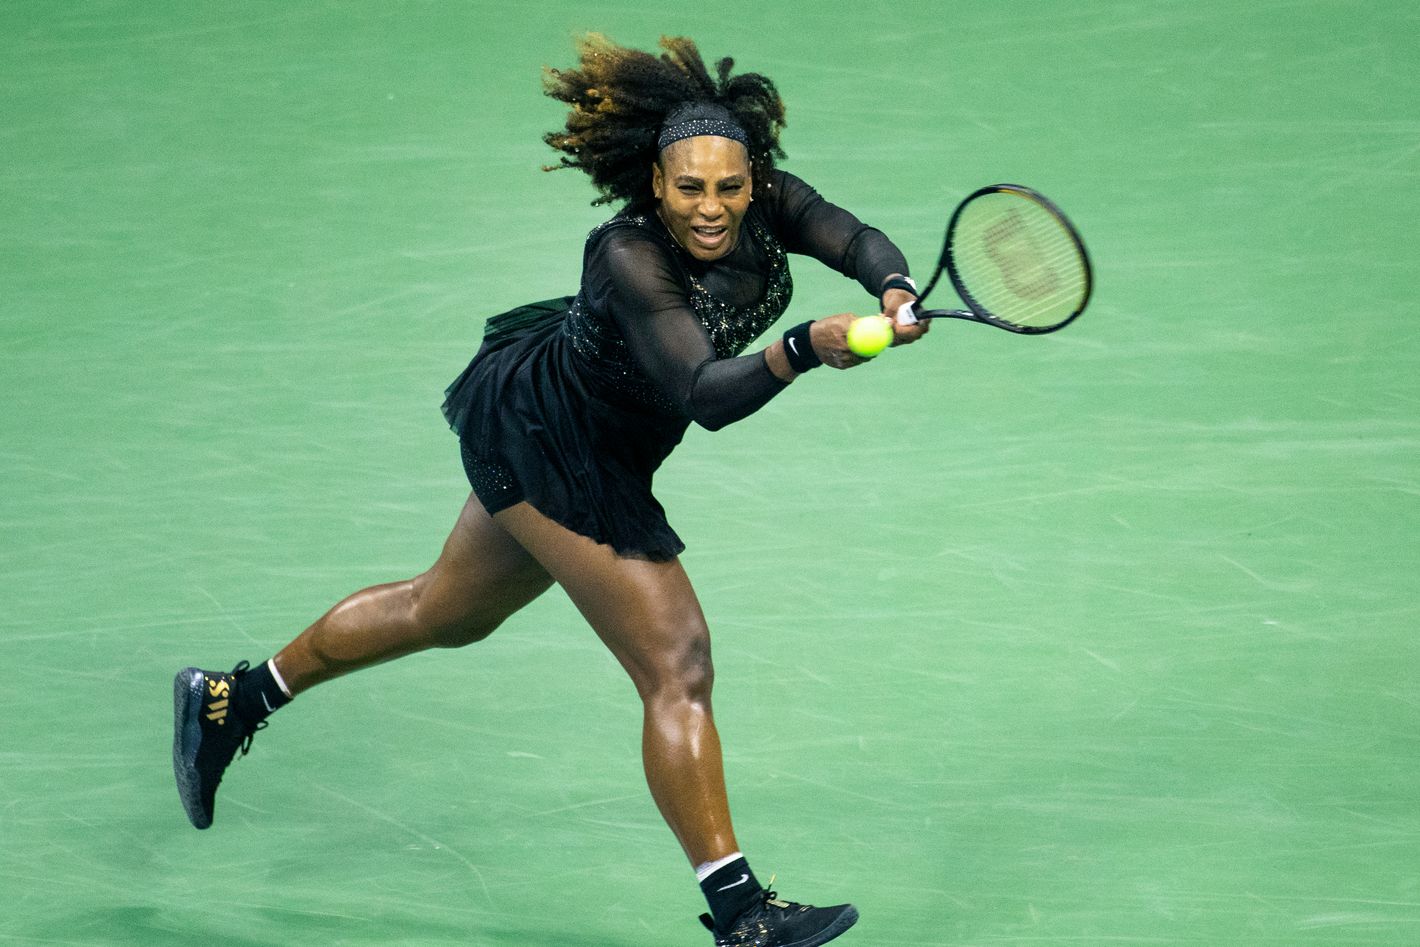 Challengers Reminded Serena Williams of Roger Federer